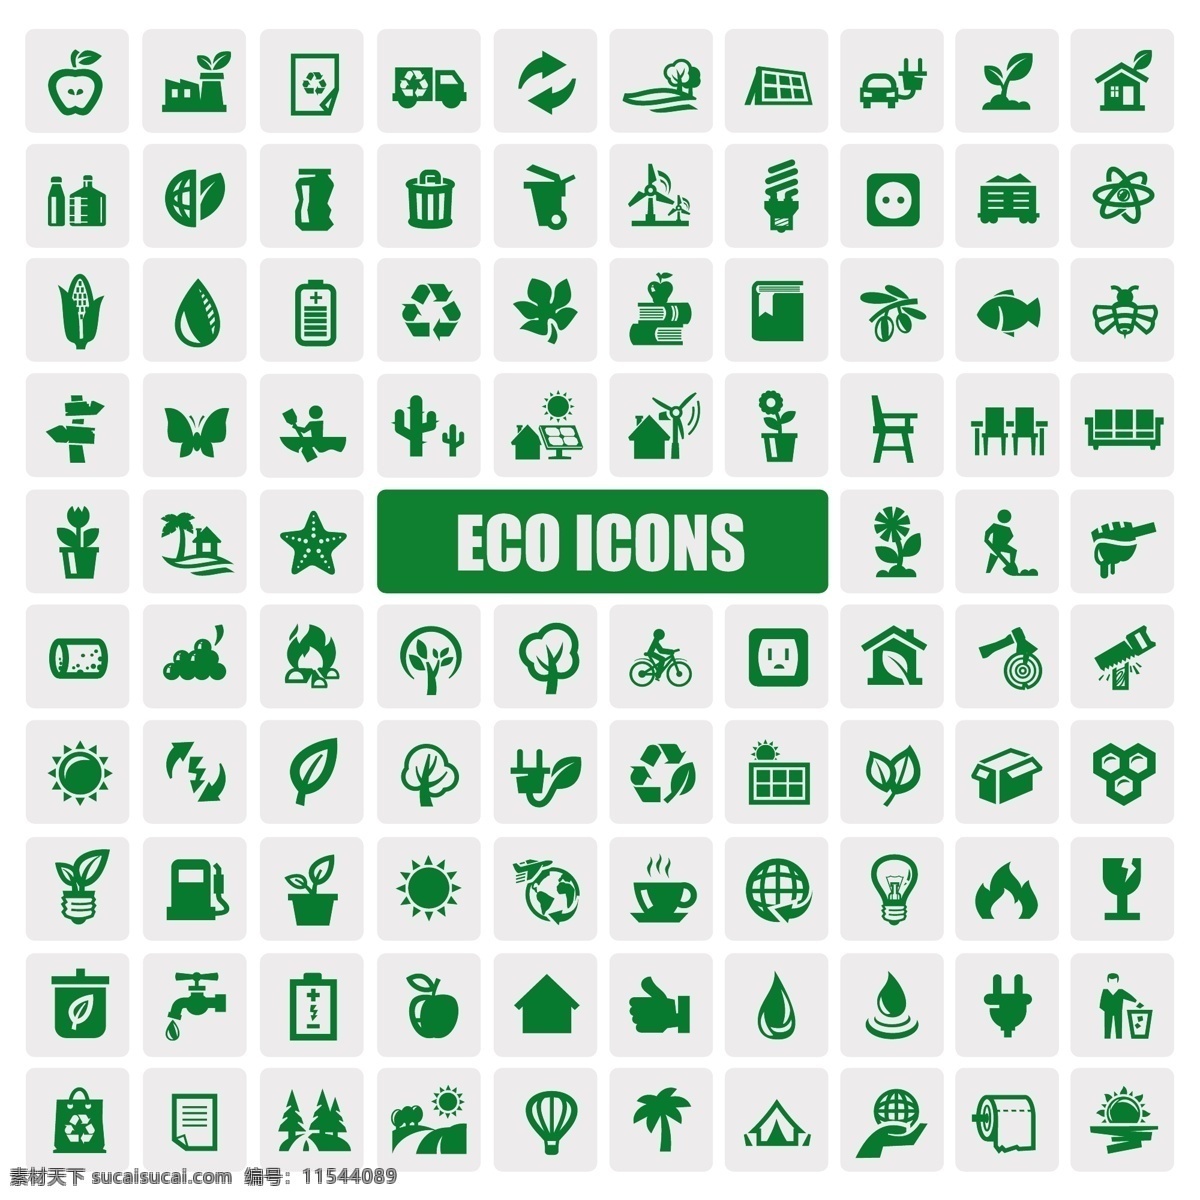 绿色环保 资源 节能 矢量 绿色 环保 矢量素材 设计素材 背景素材